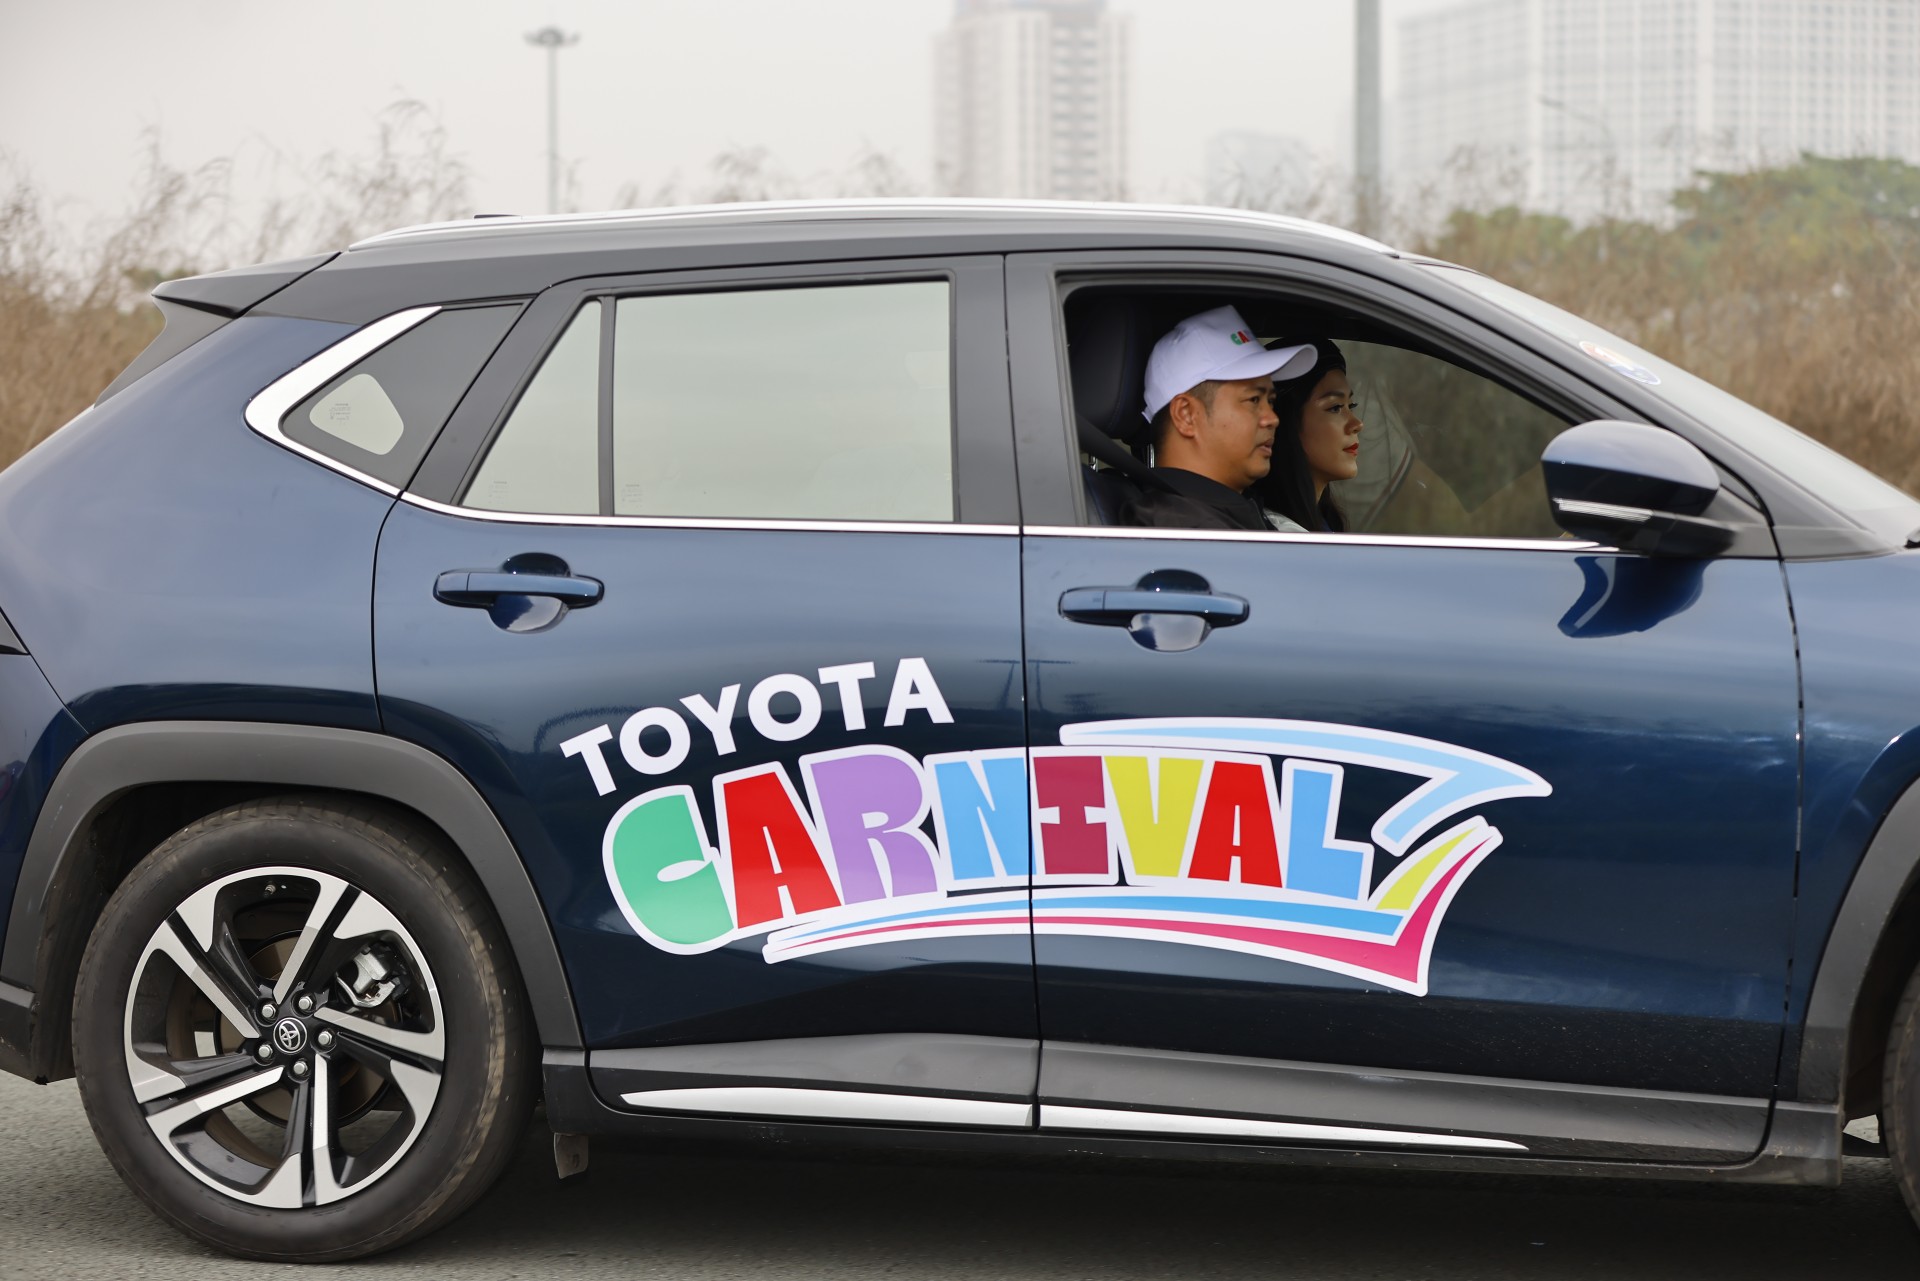 Toyota carnival chiêu đãi khách hàng tham quan với nhiều hoạt động thú vị